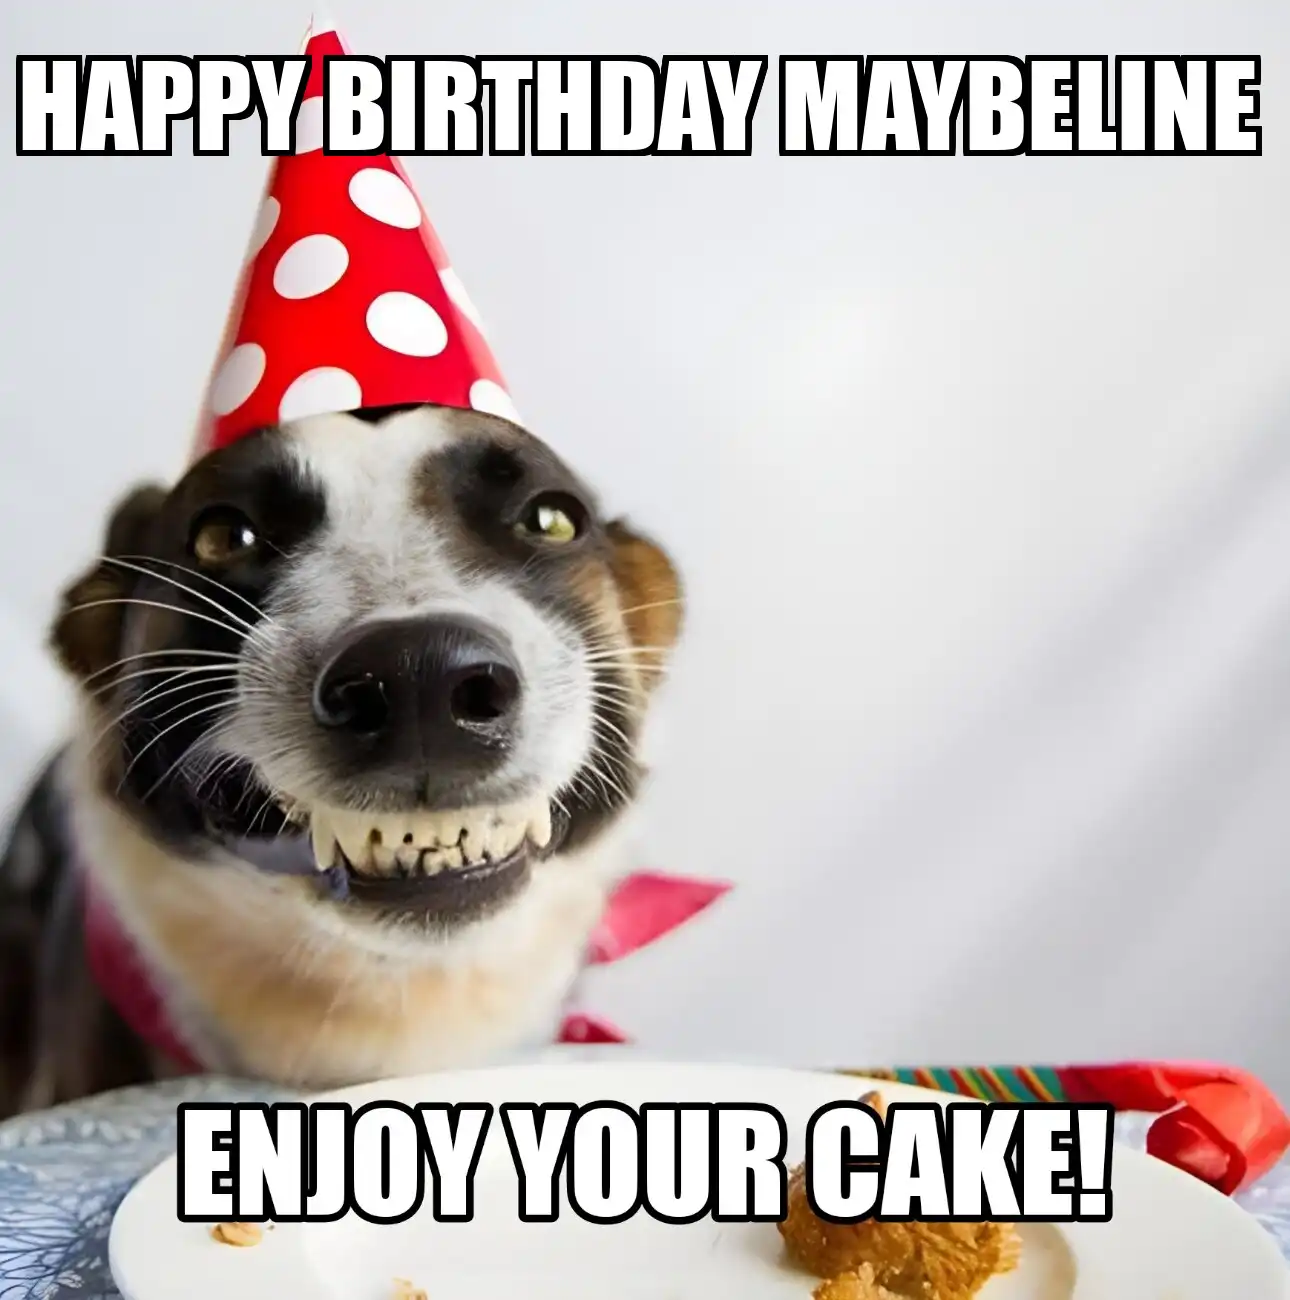 Happy Birthday Maybeline Enjoy Your Cake Dog Meme